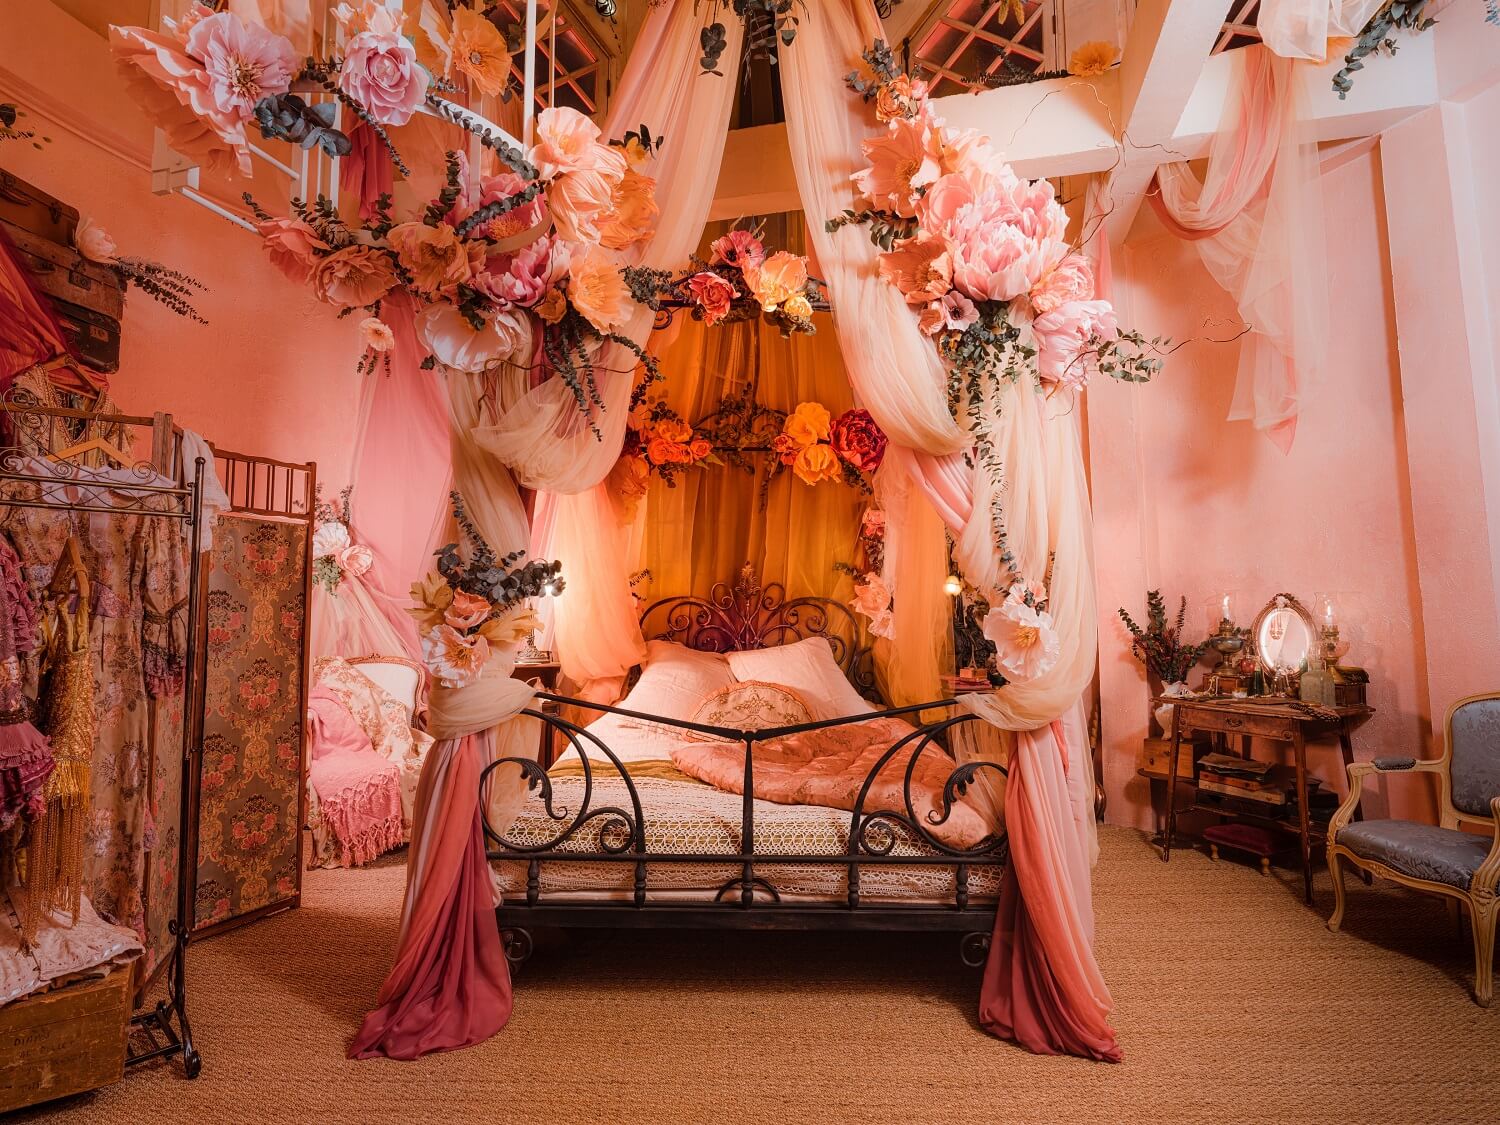 Barbiecore Interiors: The New Colorful & Fun Design Trend